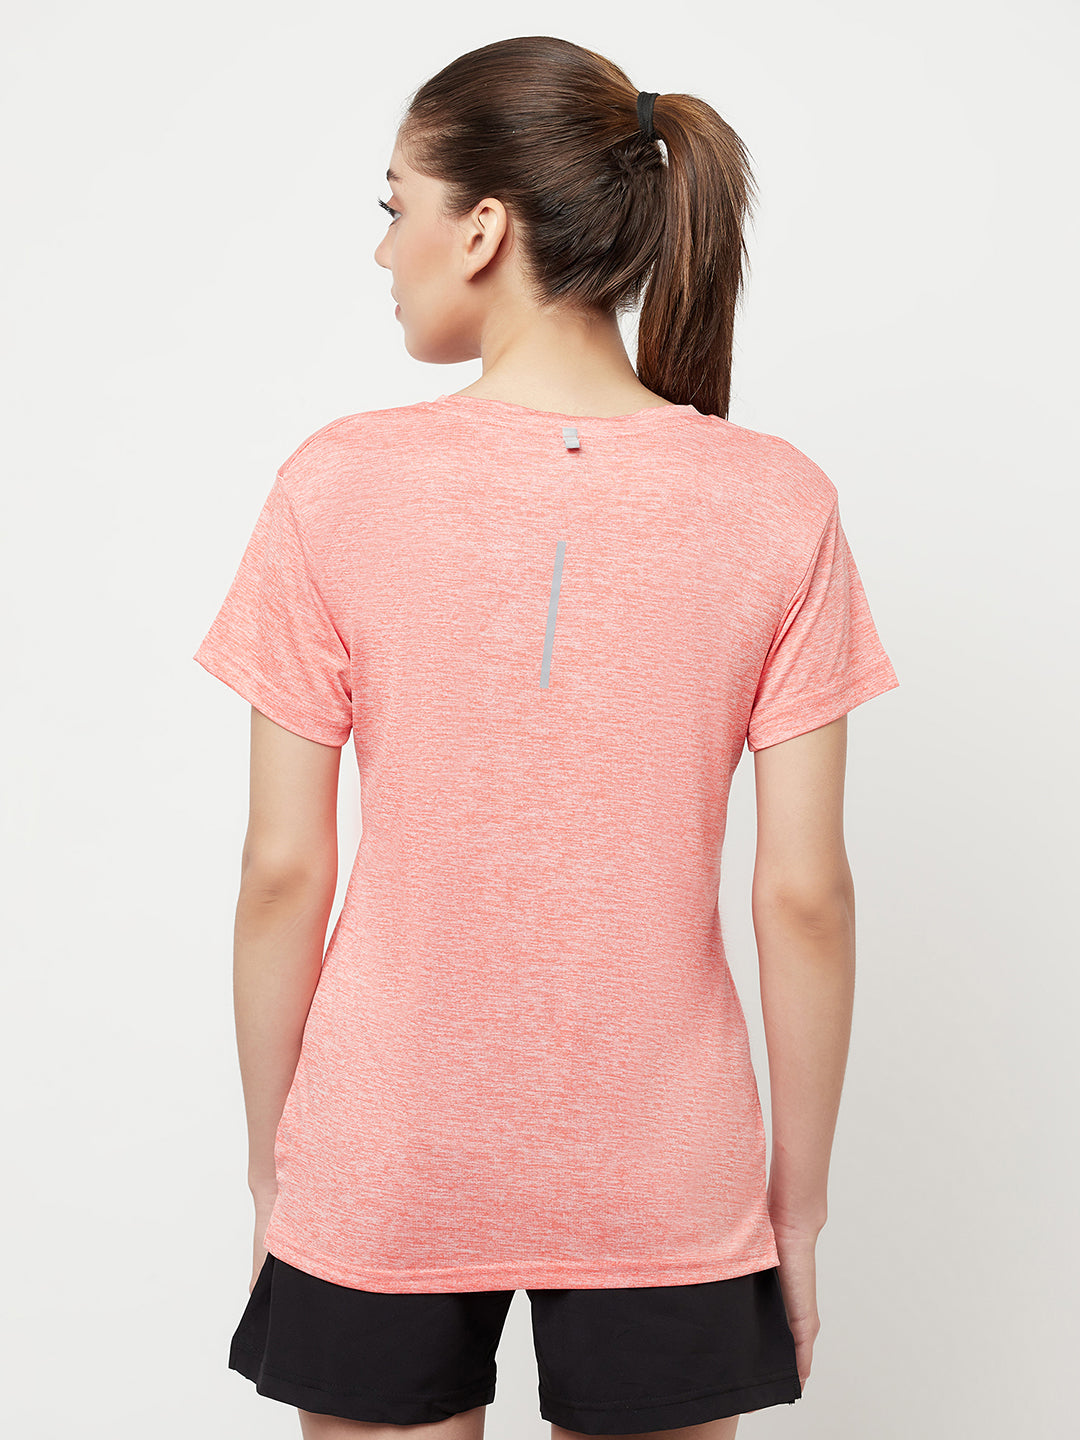 Performance Sports T-shirt - Pack of 2 Inka dark pink & Milange orange